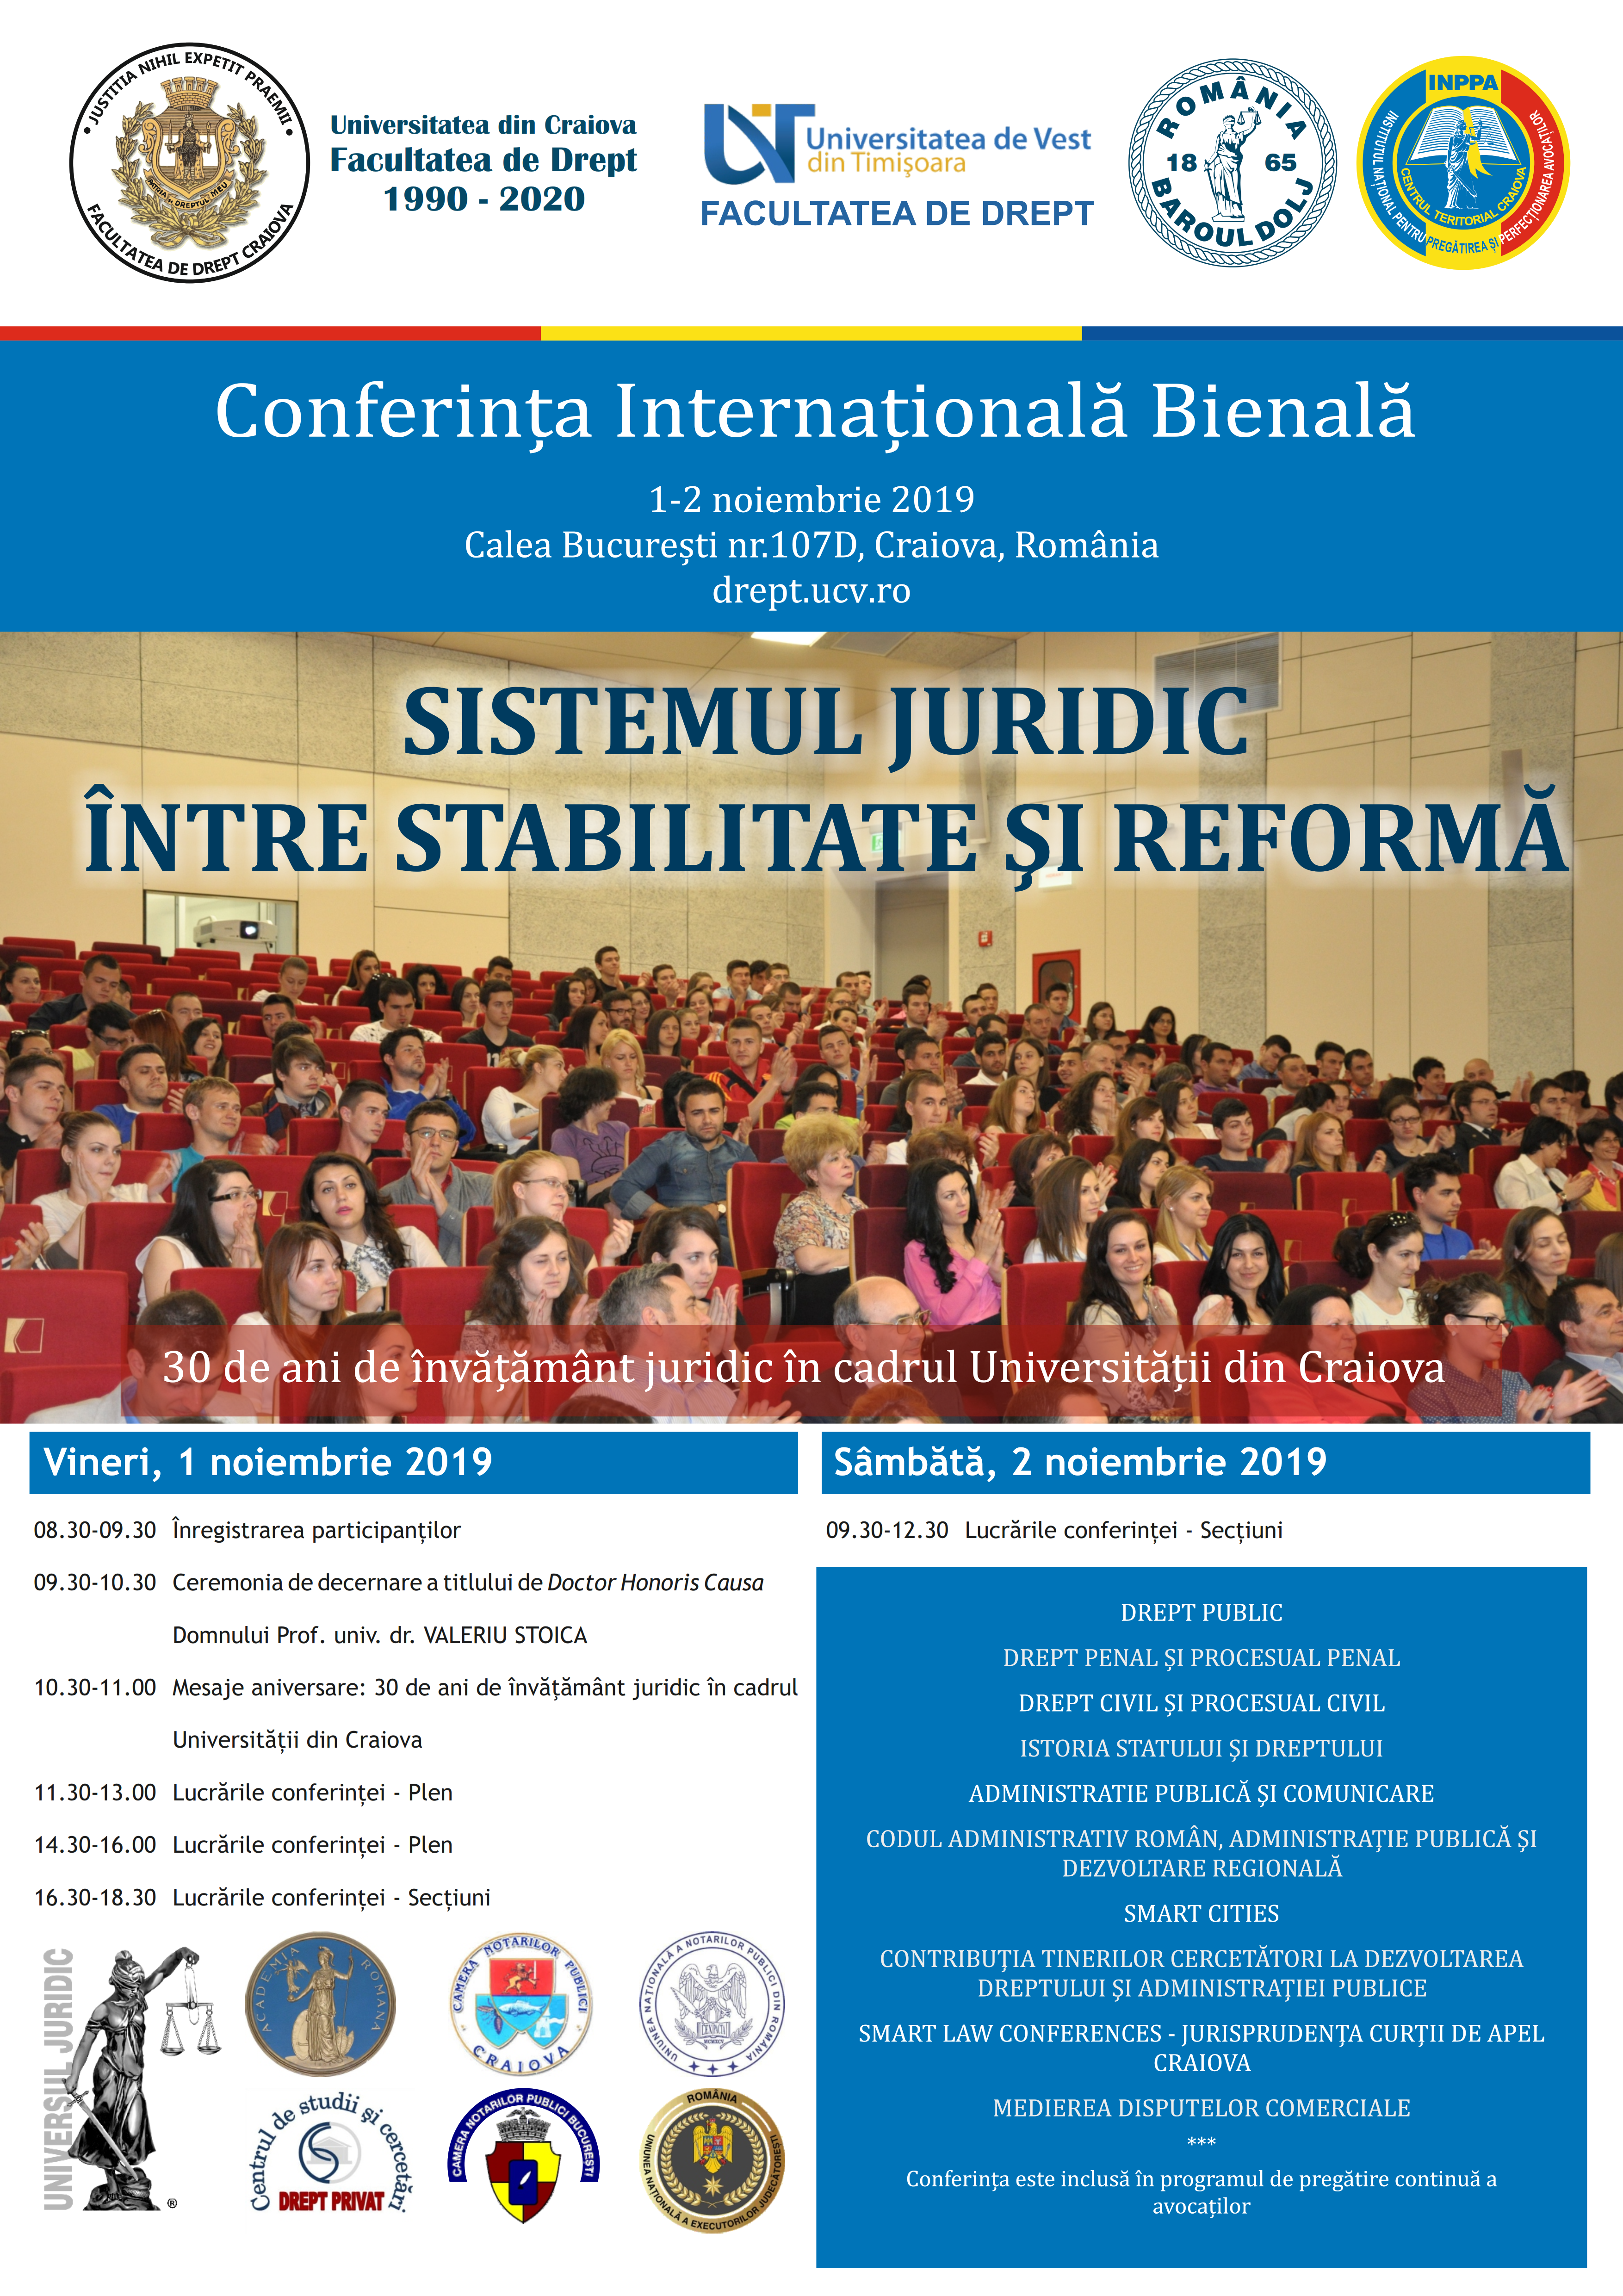  AFIS Conferinta Internationala Bienala 2019 Facultatea de Drept Craiova 001